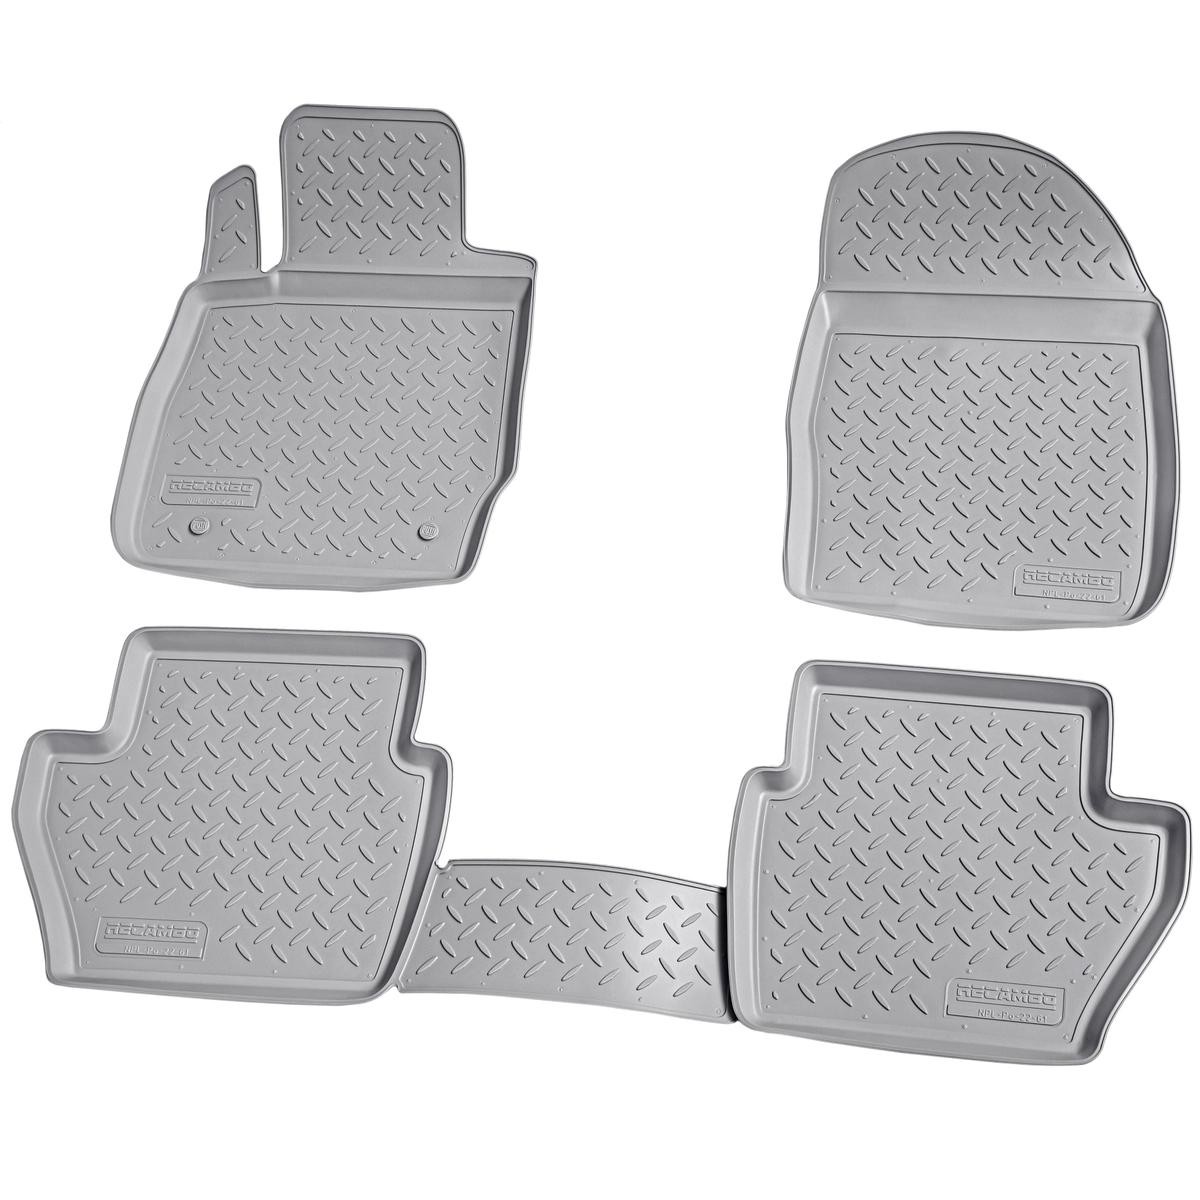 Fußmatten für Ford Fiesta VI 06/2008-2017, Fußmatten für Ford Fiesta, Fußmatten für Ford, Fußmatten nach Autotyp filtern, Textil Fußmatten, Automatten & Teppiche